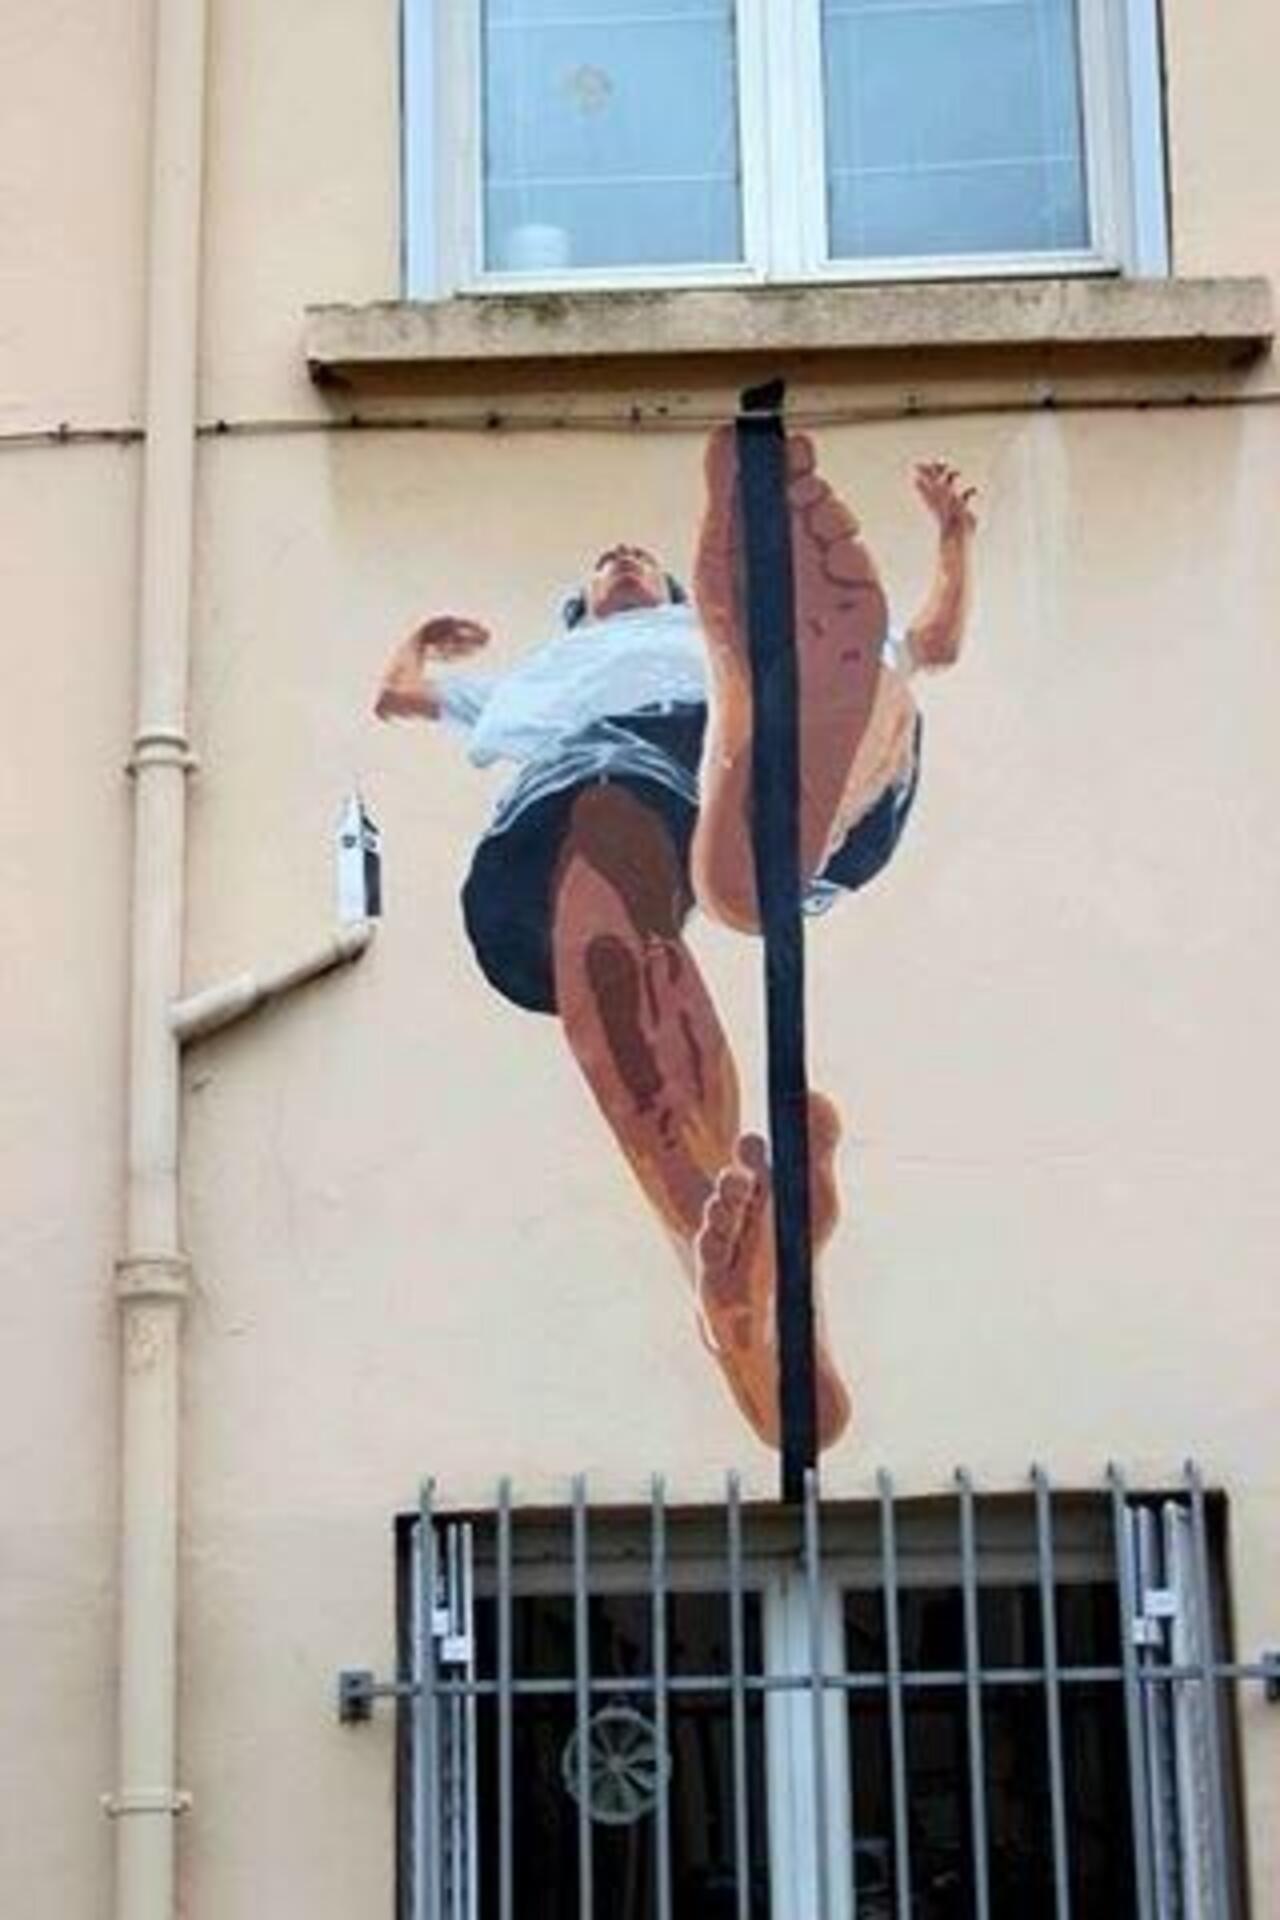 Cool Street Art of a Tightrope Walker by artist 'Big Ben' in Lyon, France #art #mural #graffiti #streetart http://t.co/AxZkwyPsce